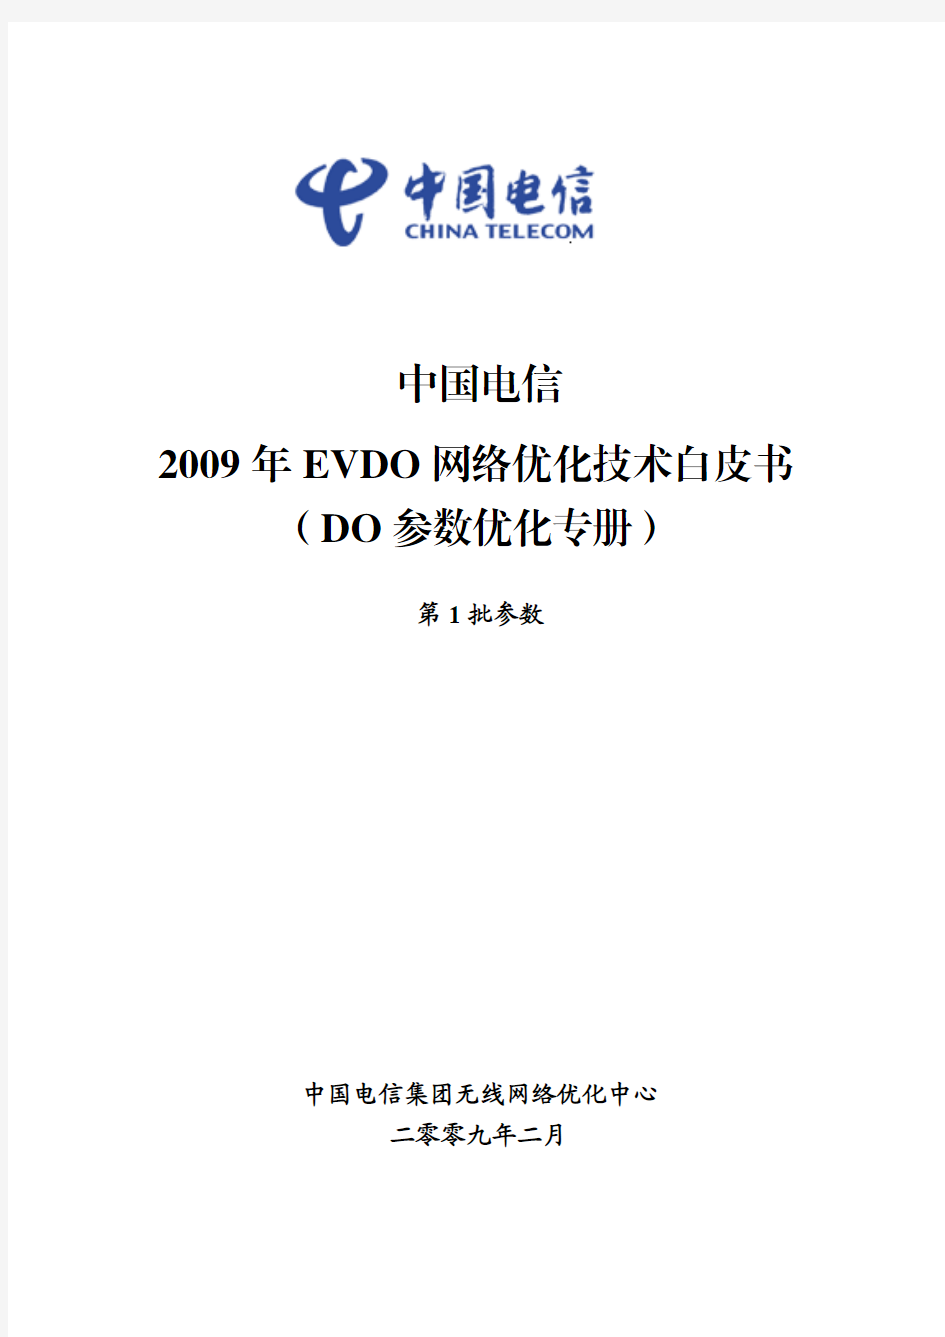 EVDO 网络优化技术白皮书(DO参数优化)